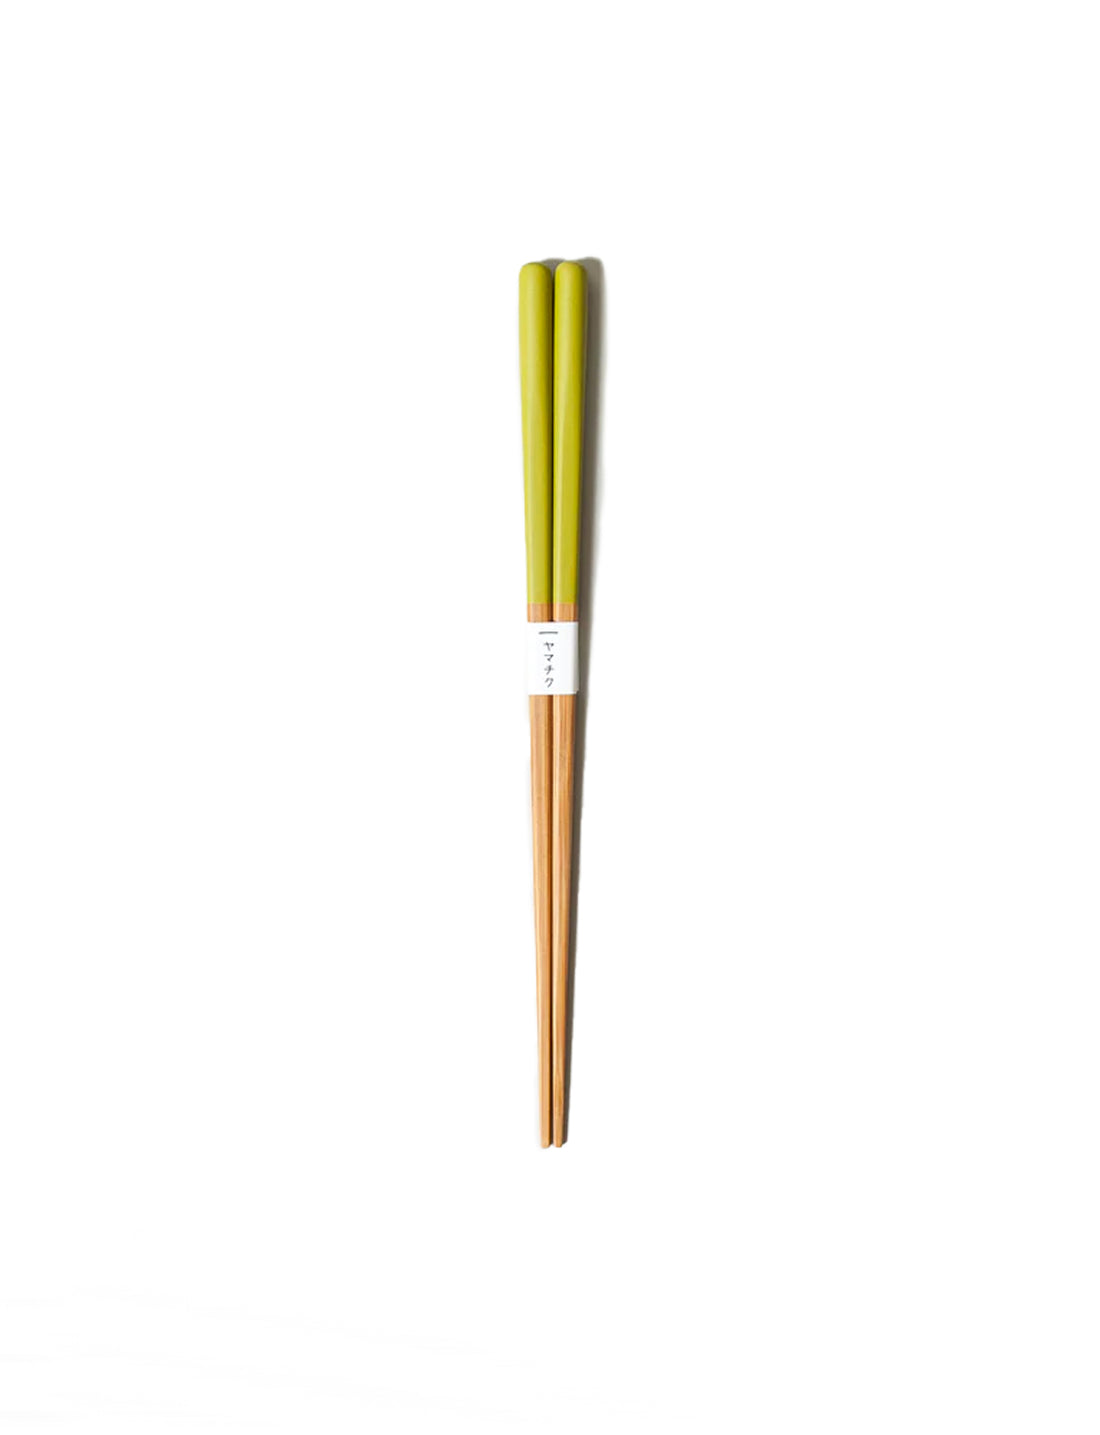 Susu Bamboo Round Chopsticks - Apple Valley Emporium